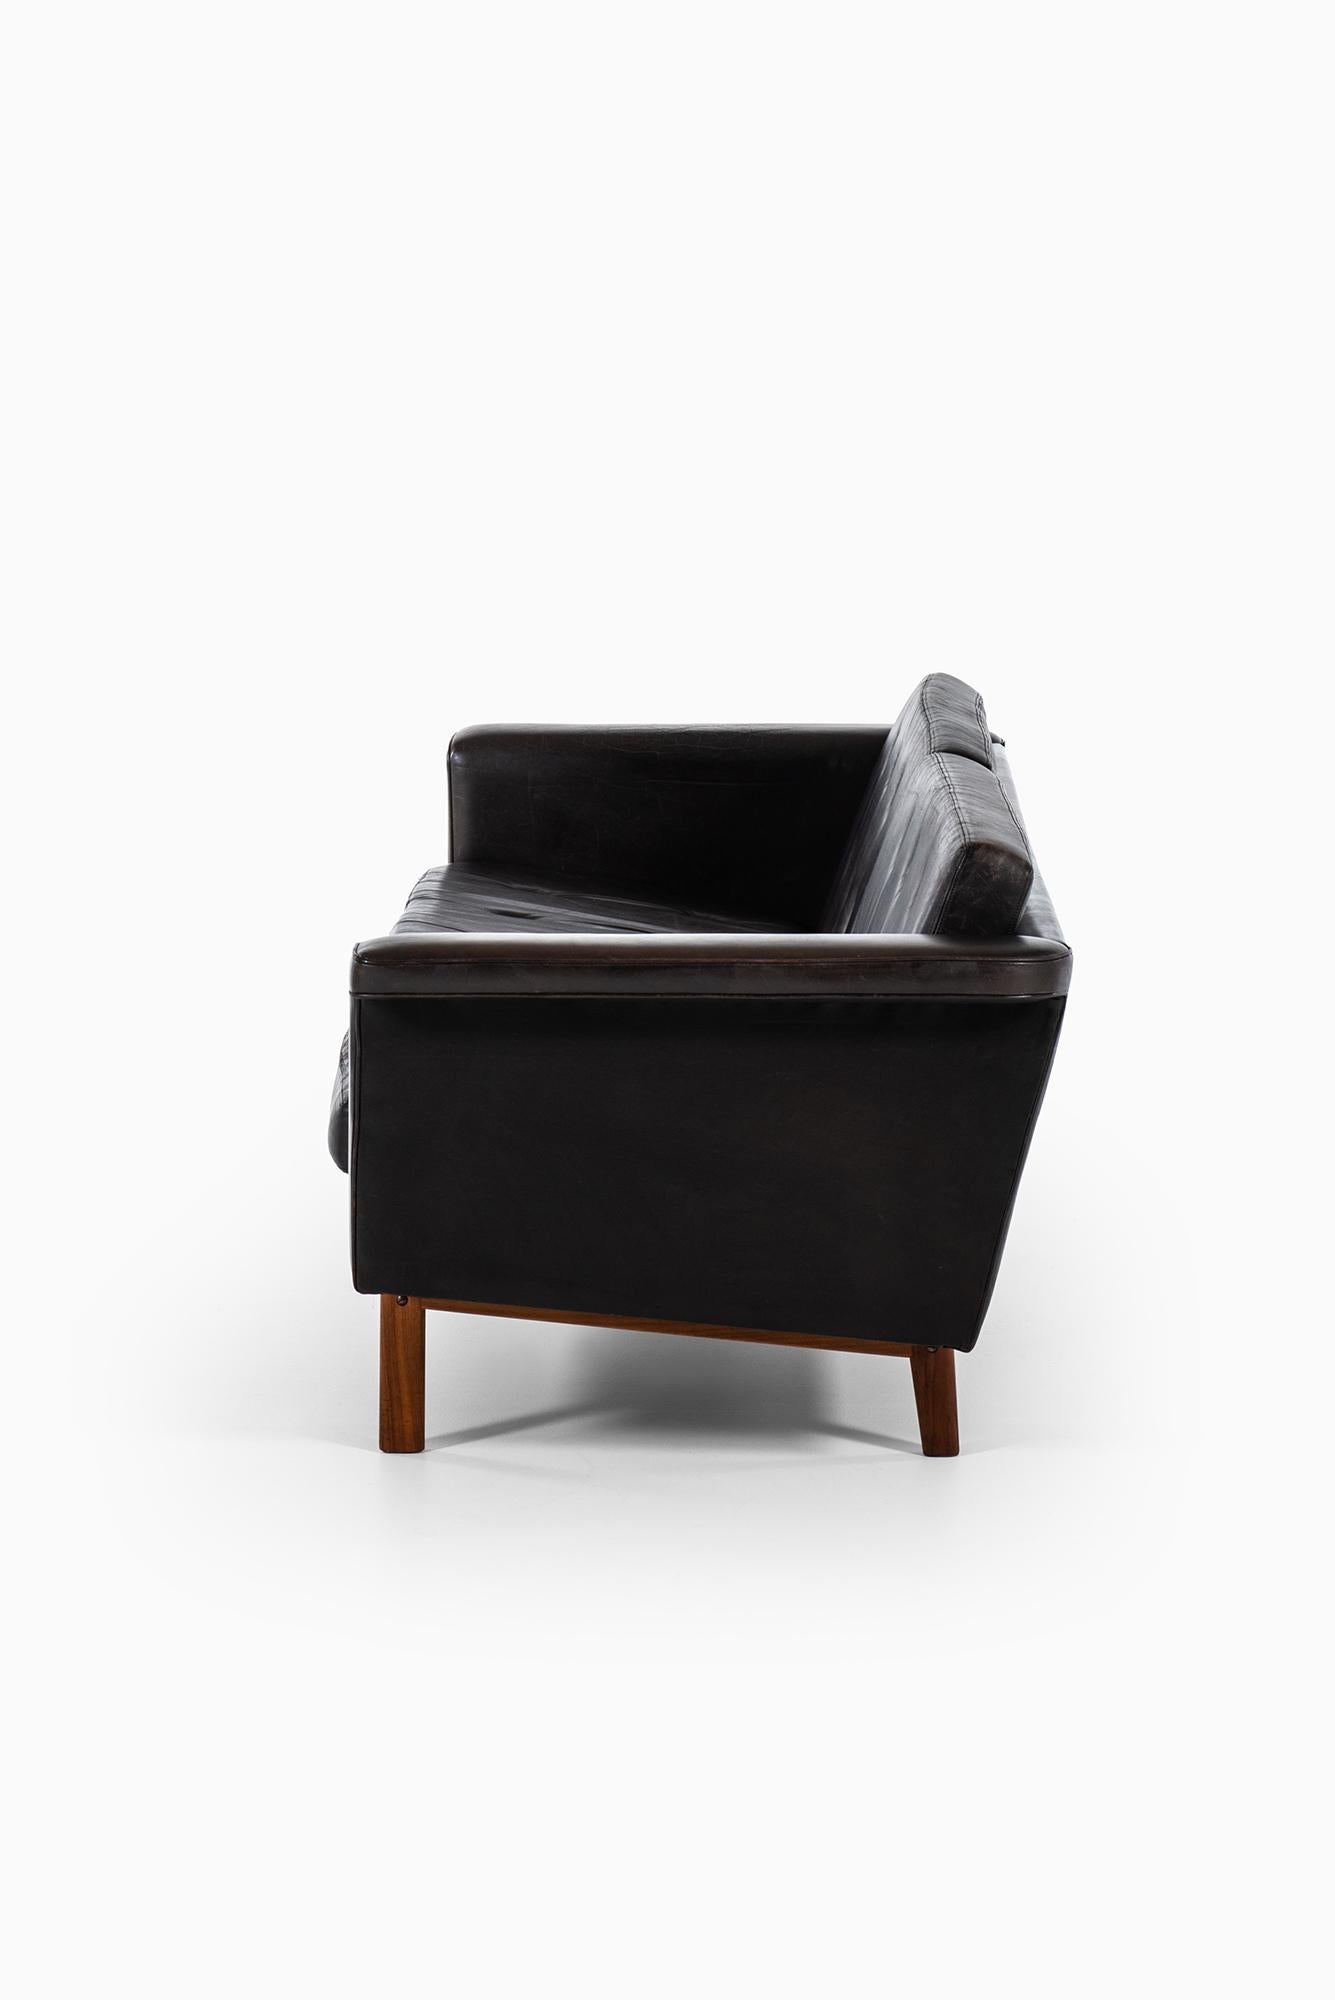 Karl-Erik Ekselius sofa in black leather by JOC in Sweden 2